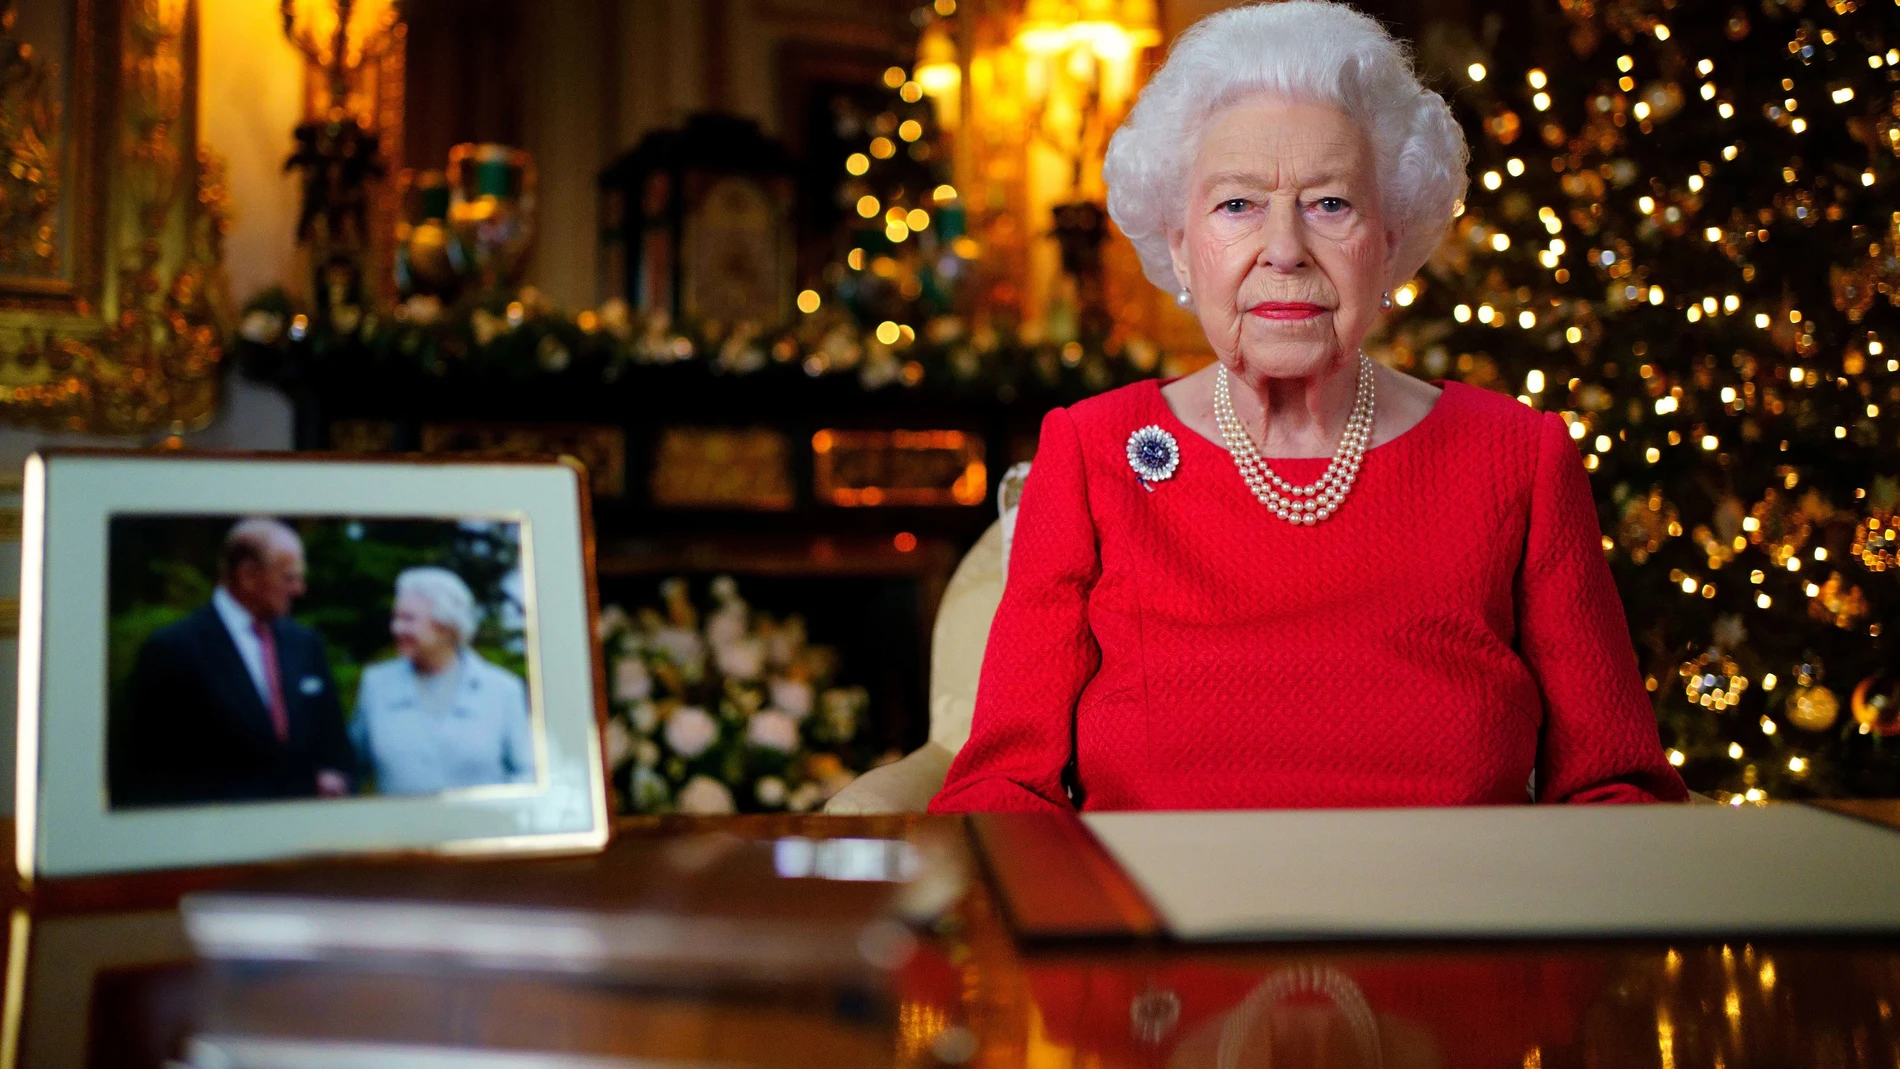 La Reina Isabel II en su discurso de Navidad